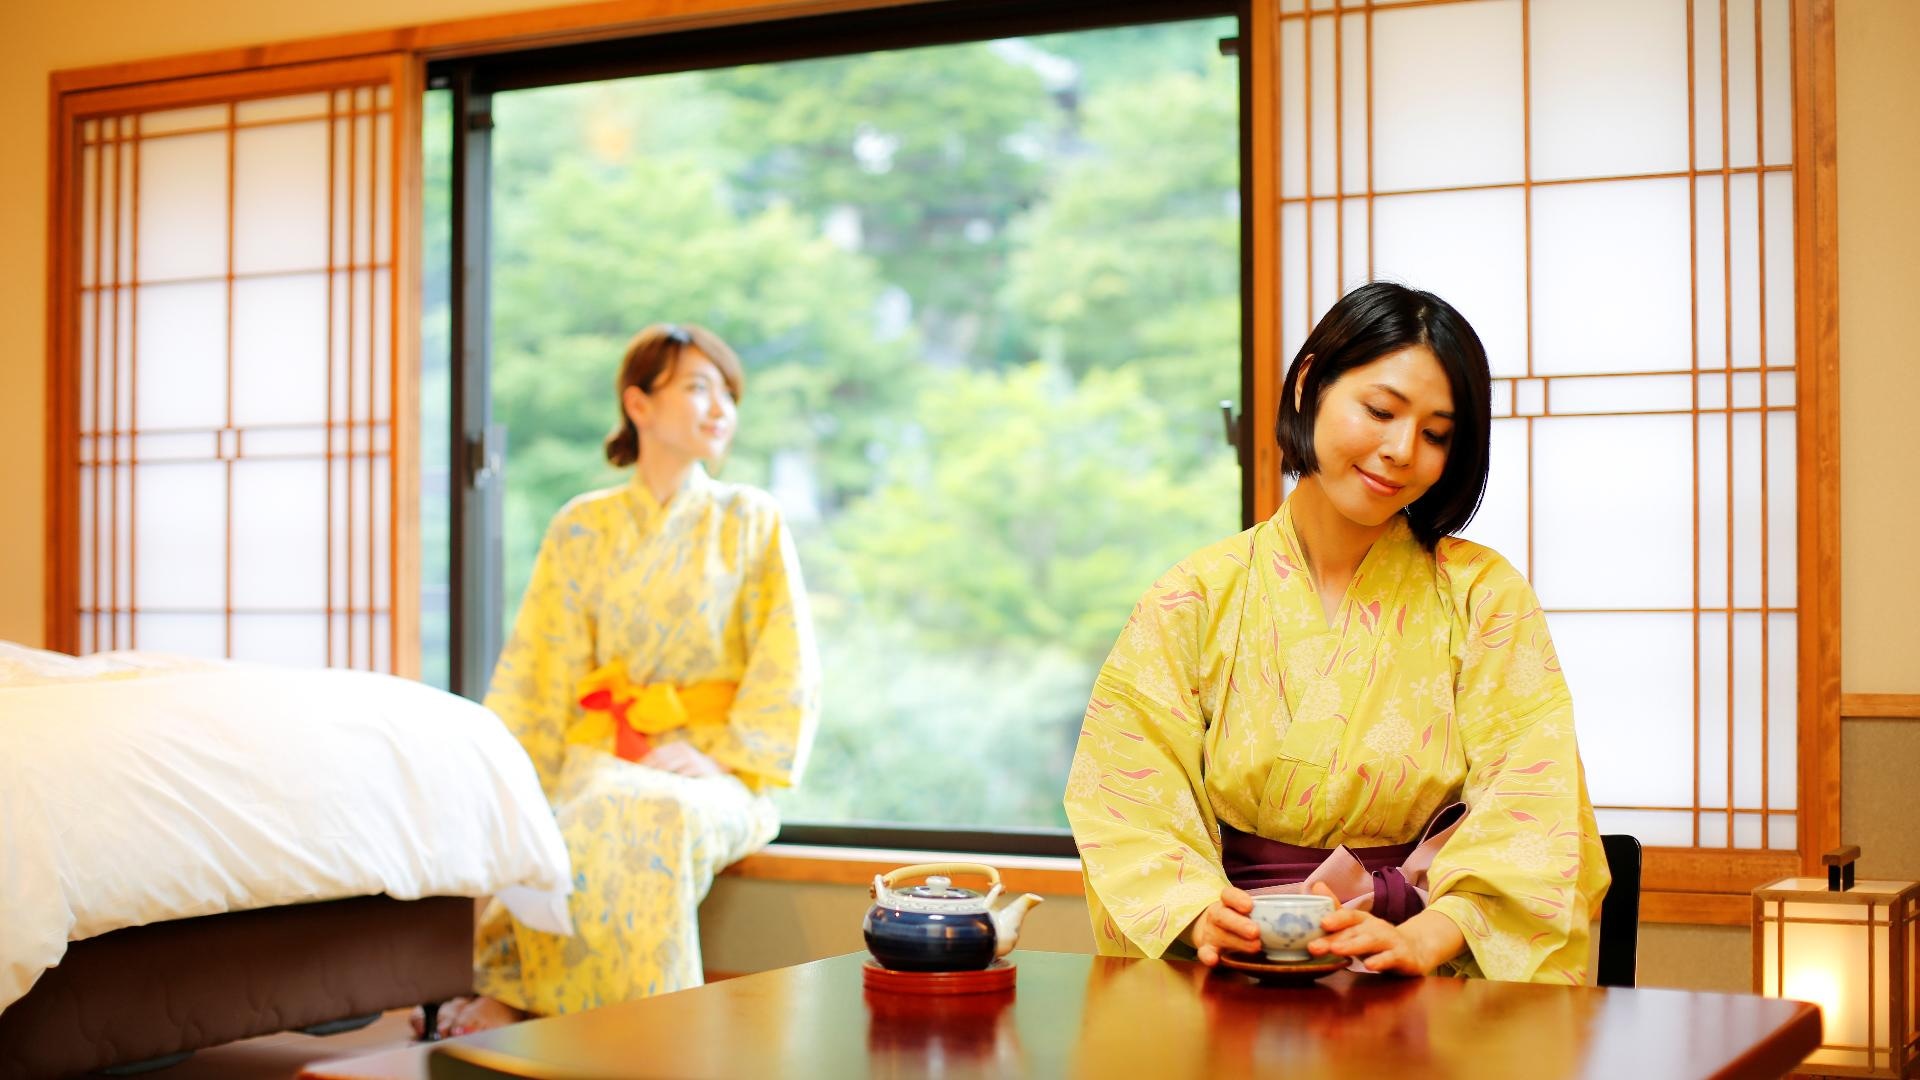 ■ ภาพการใช้ห้องพักแบบญี่ปุ่นและแบบตะวันตก